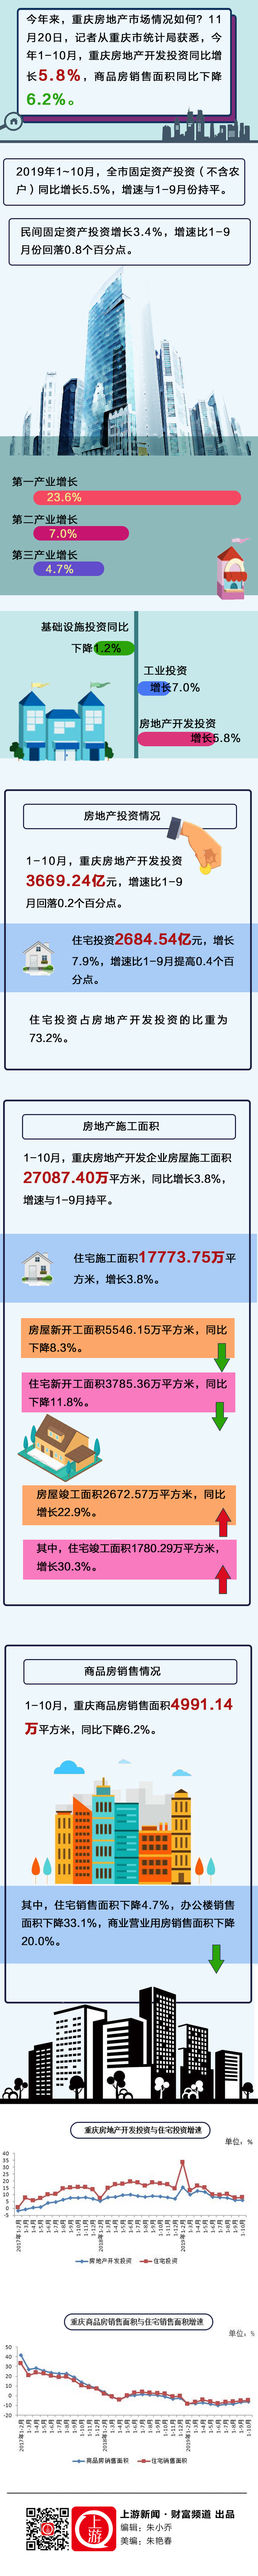 今年来，重庆房地产市场情况如何？.jpg